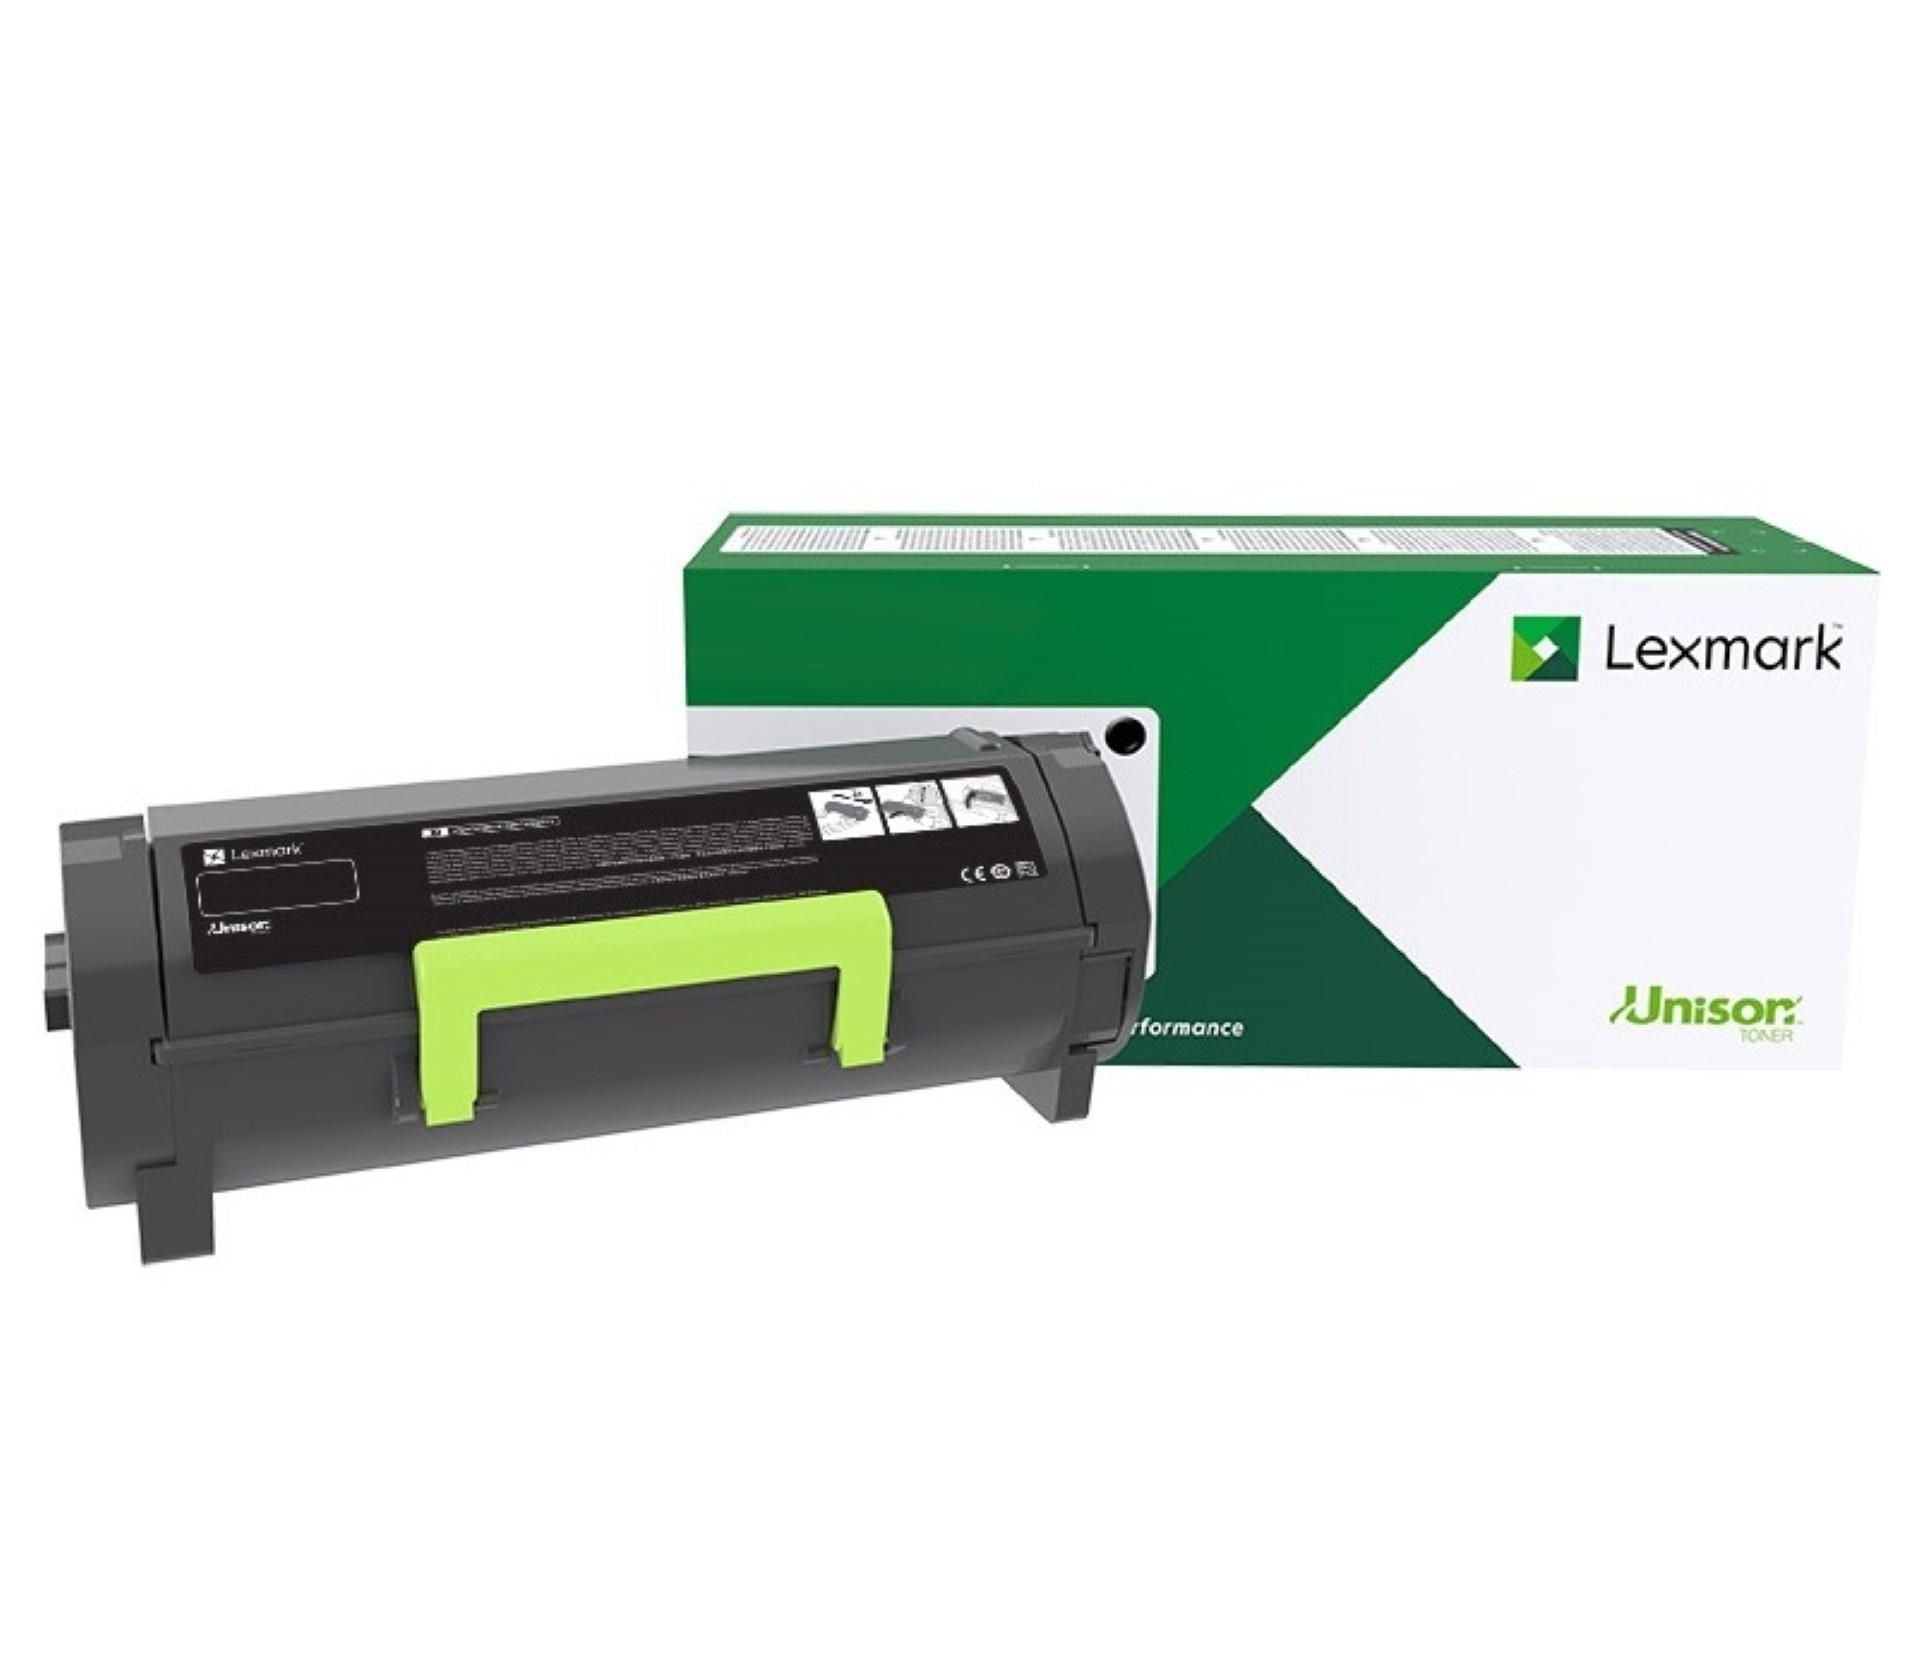 Toner Laser Lexmark / Color Negro / Extra Alto Rendimiento / B254X00 / Hasta 10,000 Paginas / 5 De Cobertura / P/Modelos B2546Dw, Mb2546Adwe